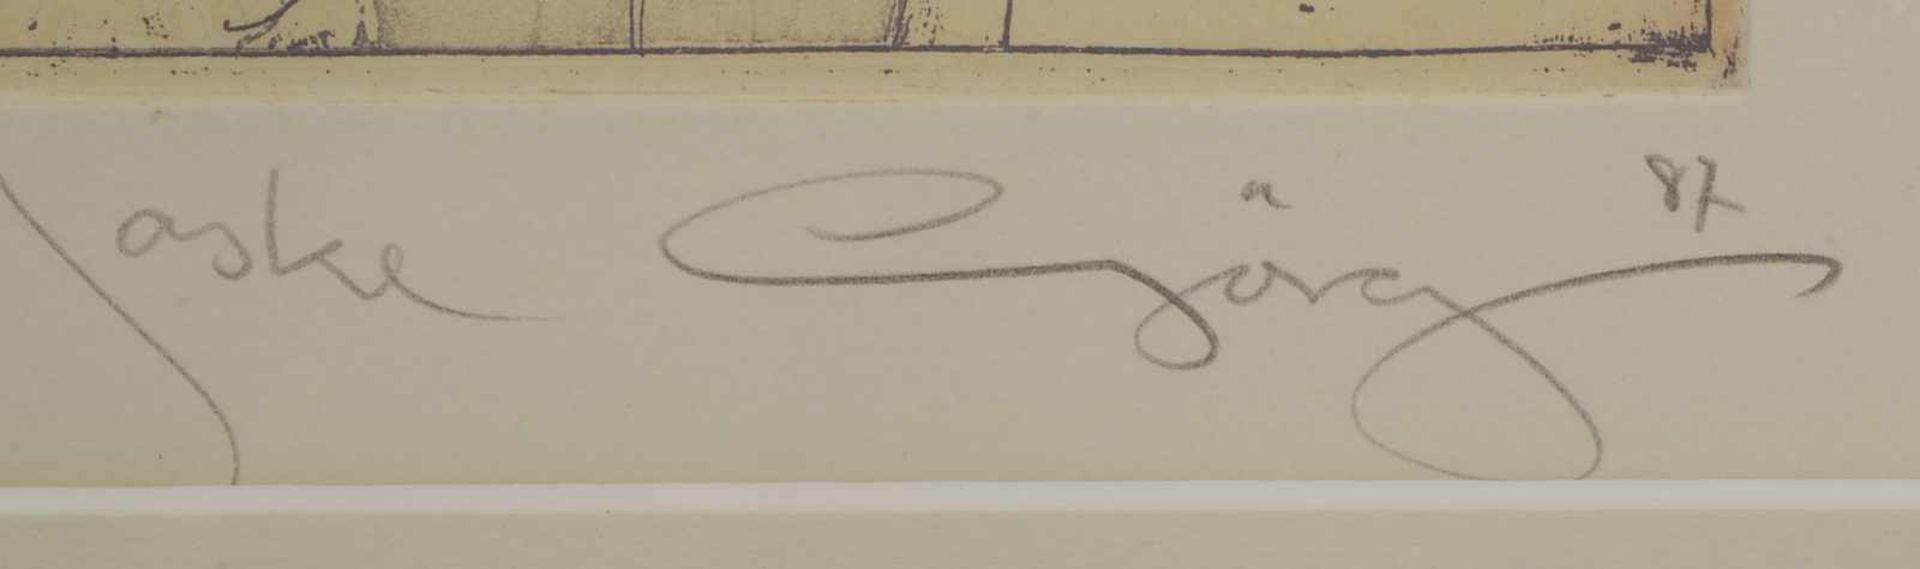 Görg, Jürgen, 2 Farbradierungen, 'Chiffre' und 'Maske', jeweils signiert und datiert, betitelt und - Bild 2 aus 2